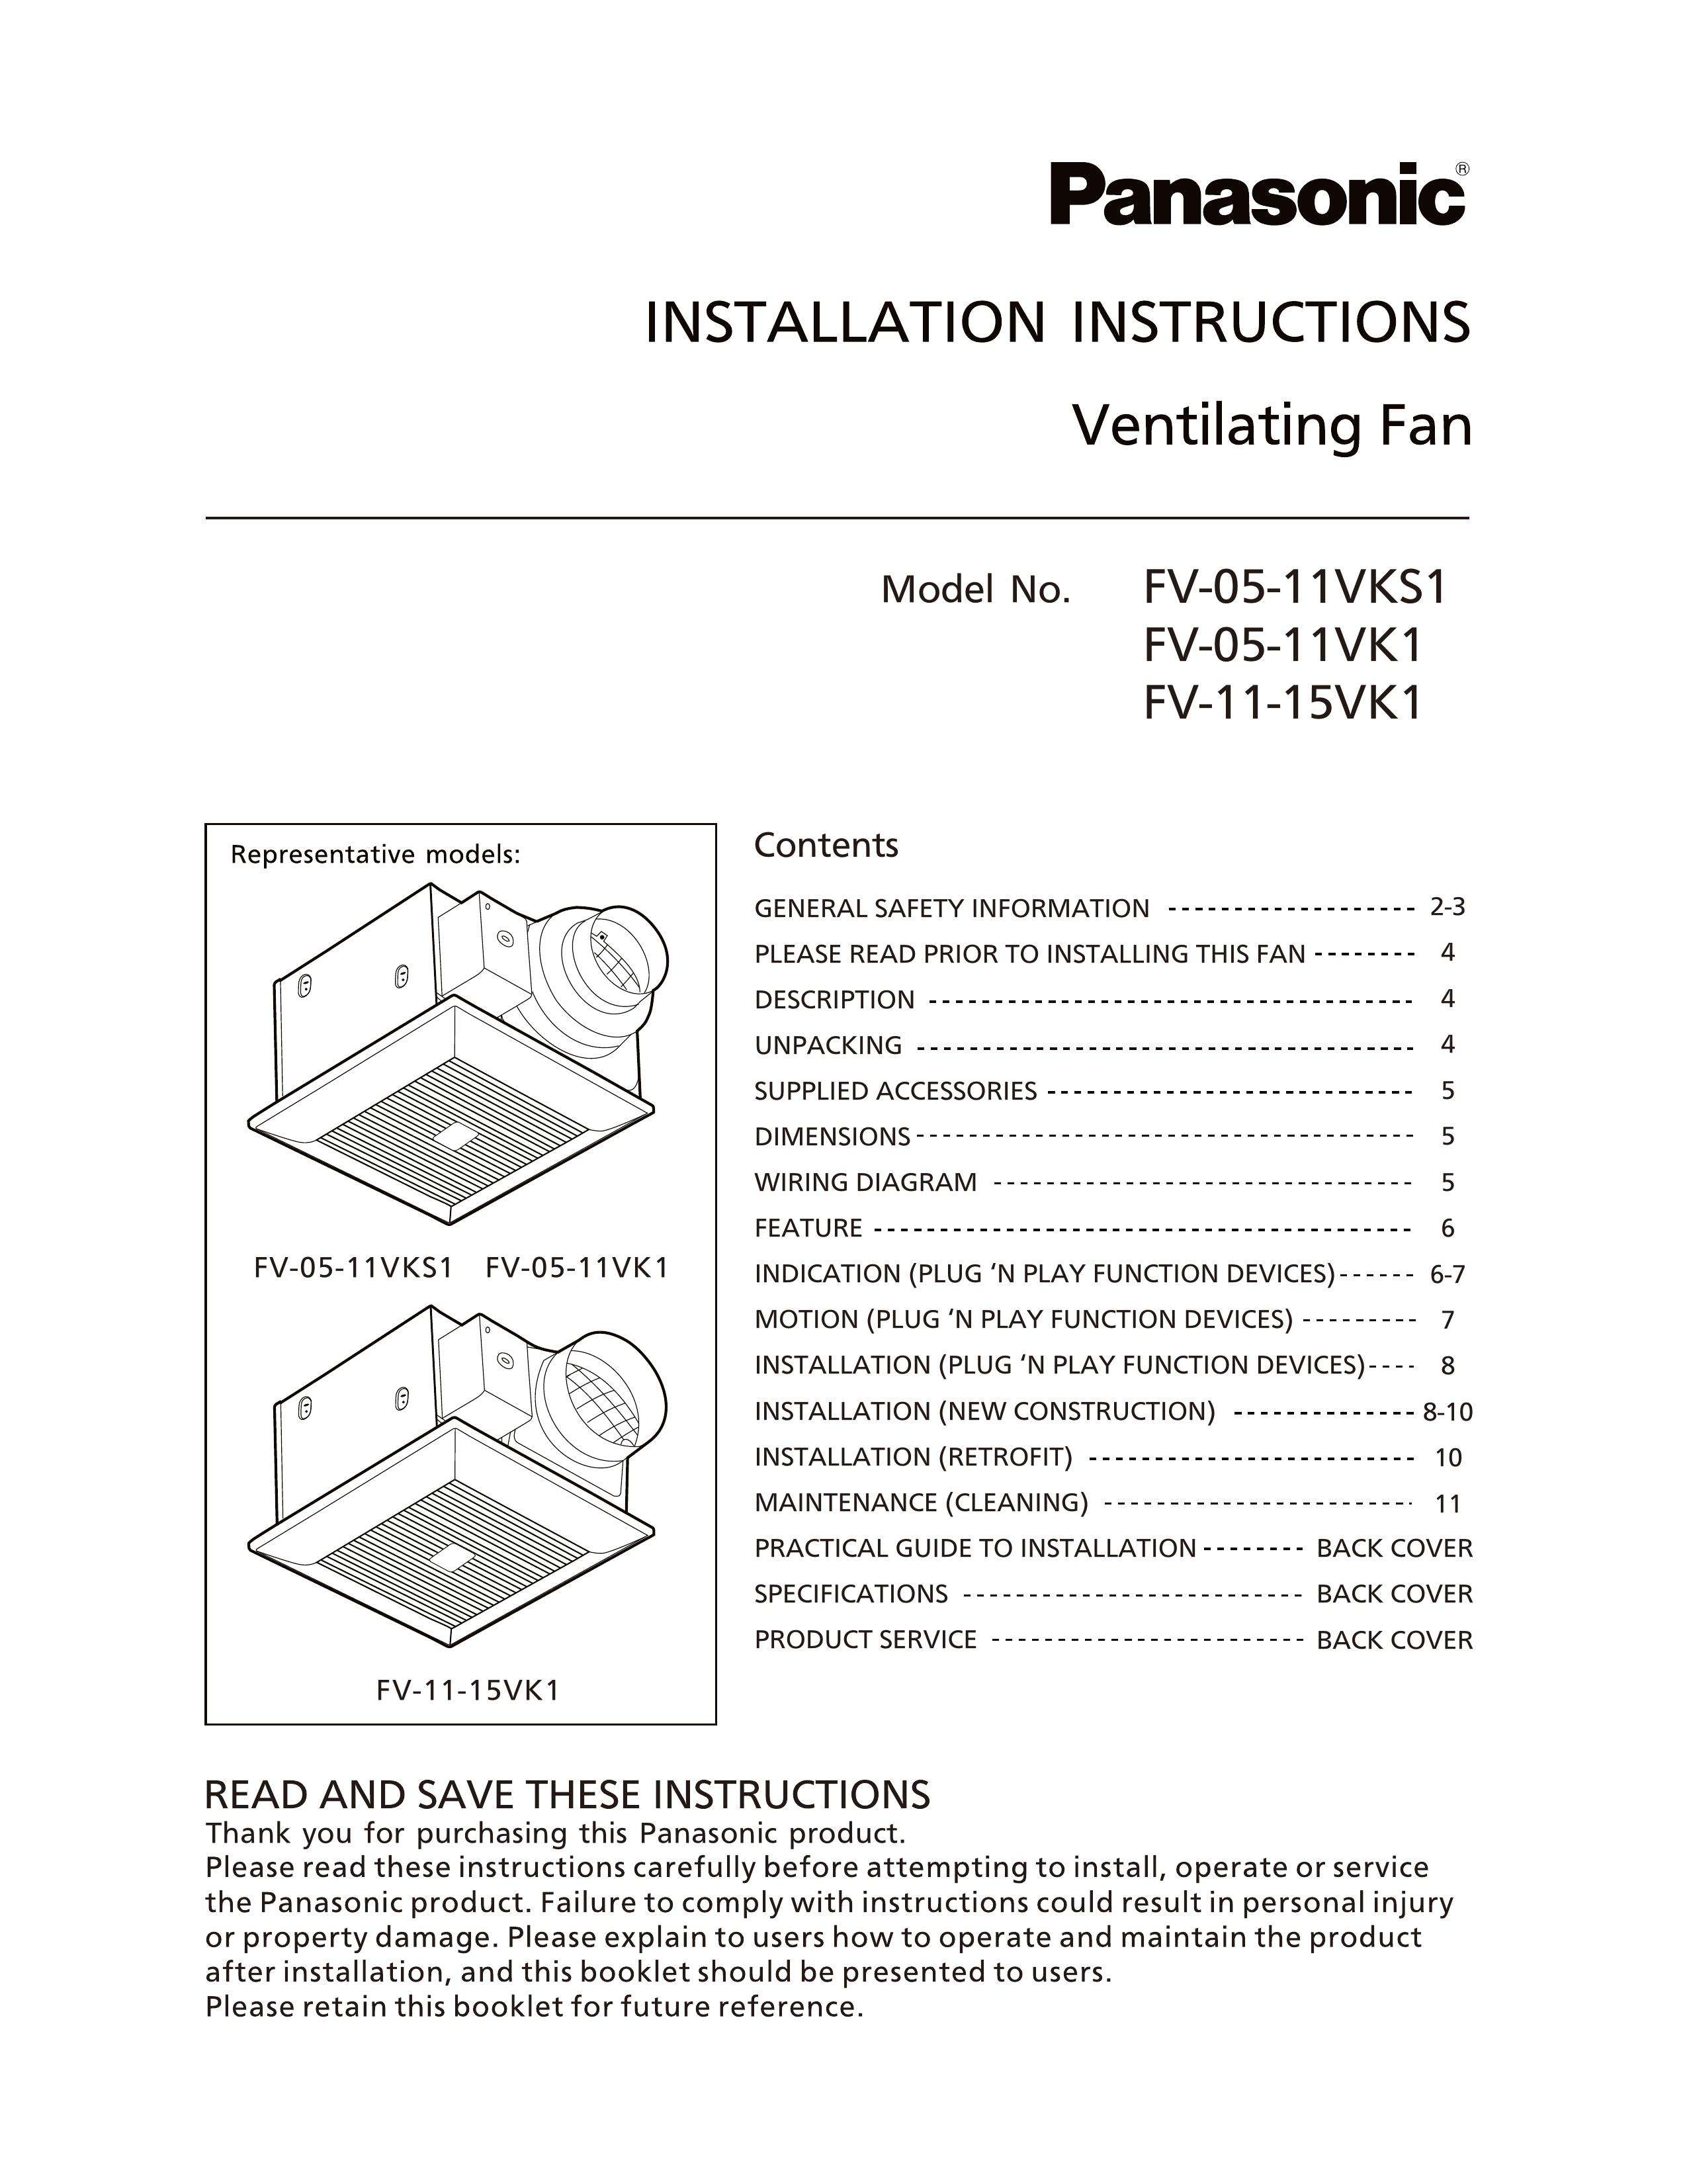 Panasonic FV-05-11VK1 Ventilation Hood User Manual